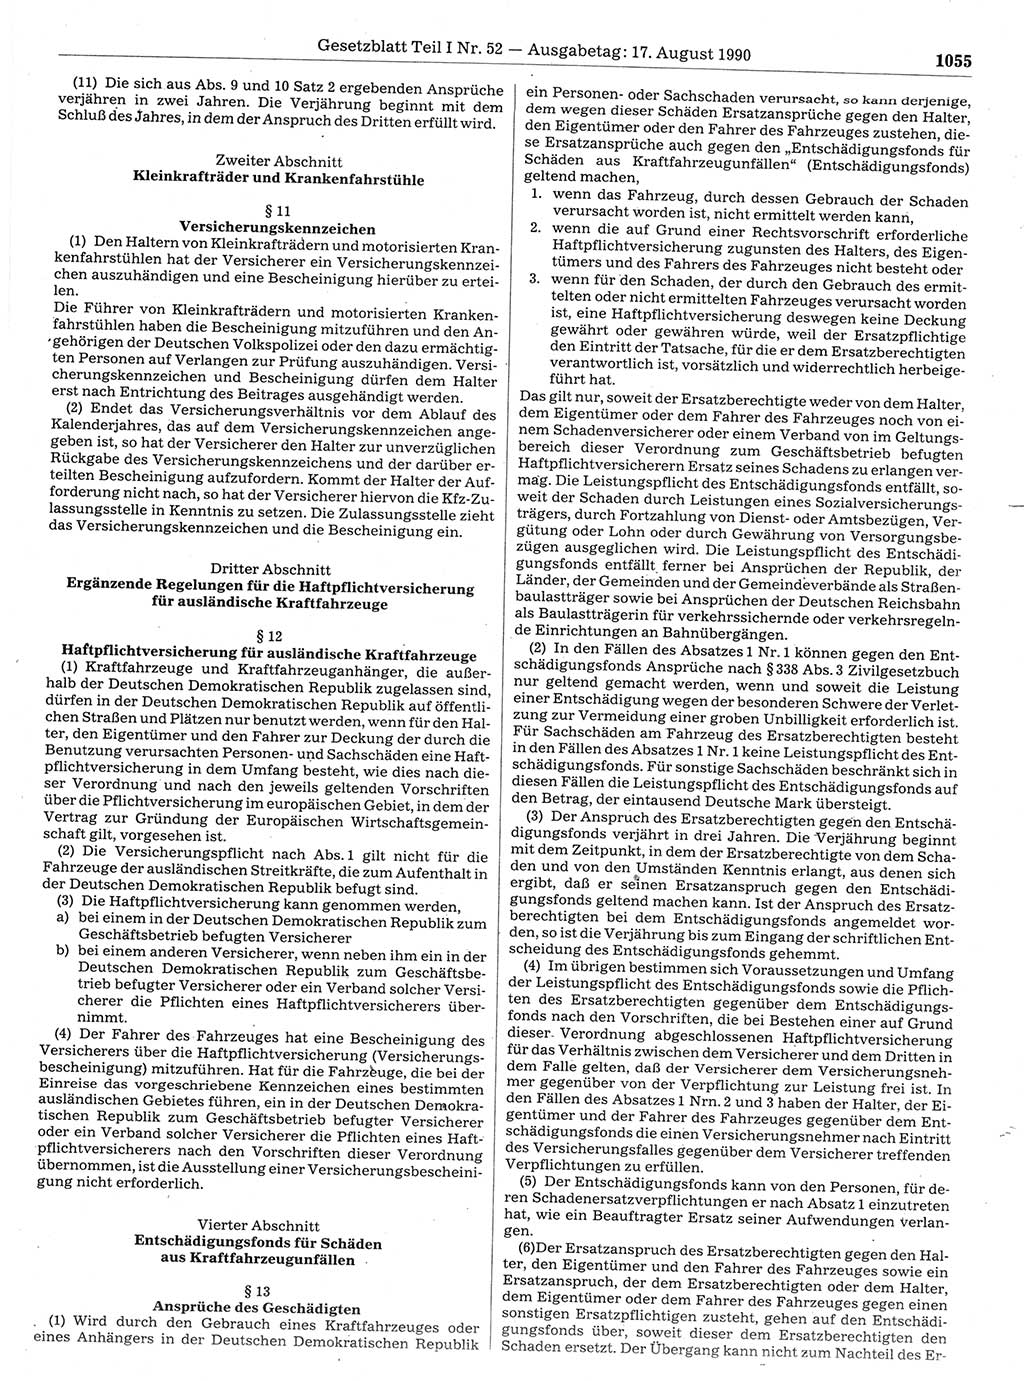 Gesetzblatt (GBl.) der Deutschen Demokratischen Republik (DDR) Teil Ⅰ 1990, Seite 1055 (GBl. DDR Ⅰ 1990, S. 1055)